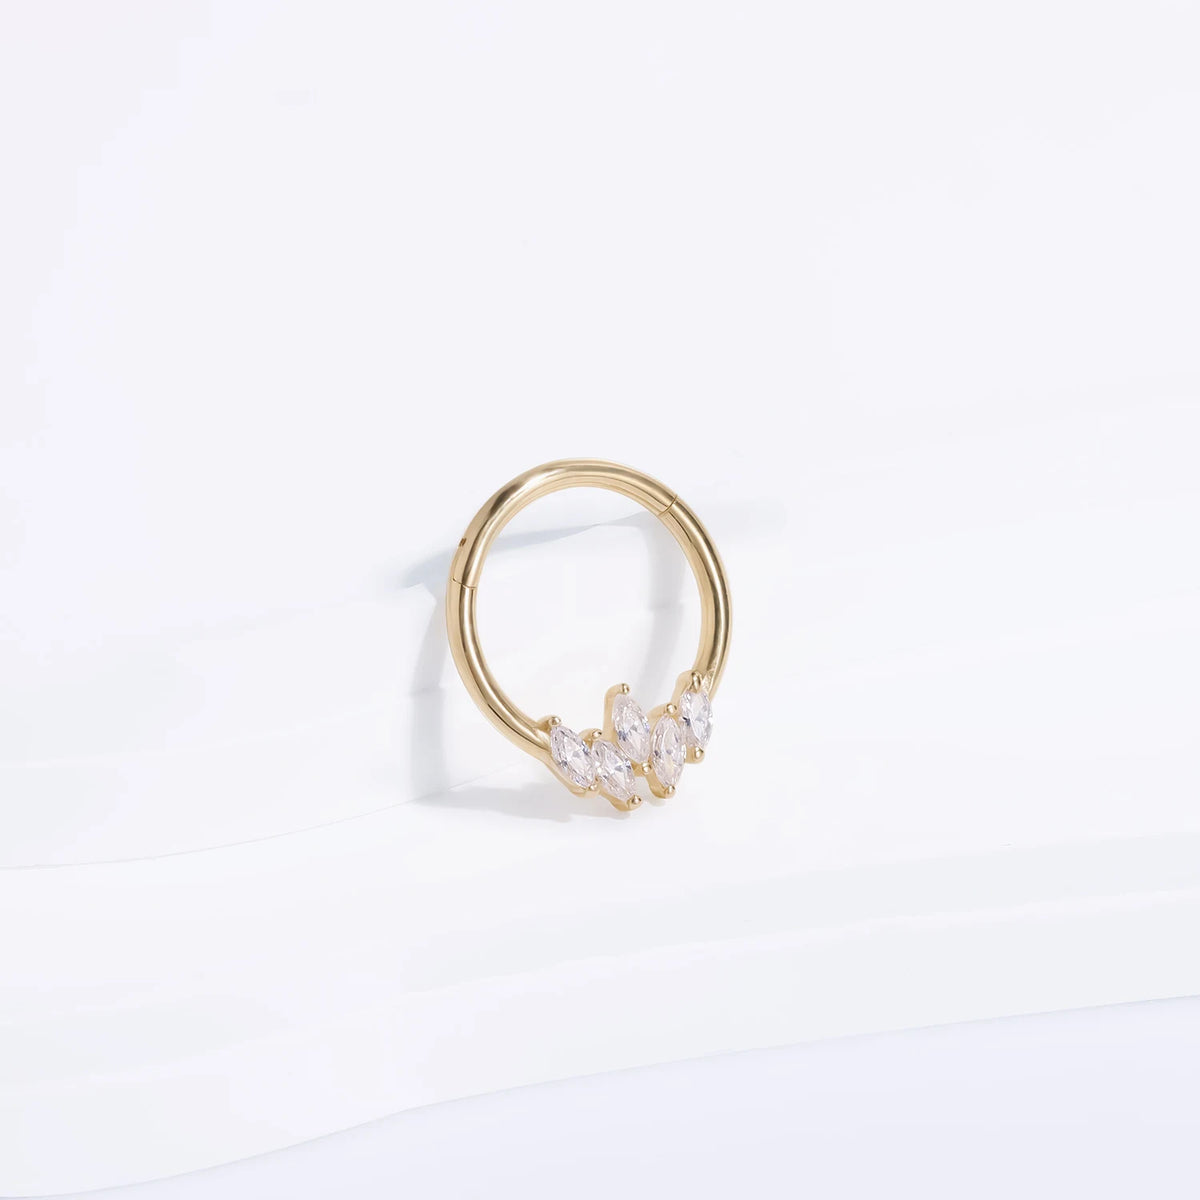 Anillo de tabique de oro de 14k con piedras CZ transparentes anillo de nariz de anillo clicker de segmento con bisagras de oro macizo 16G